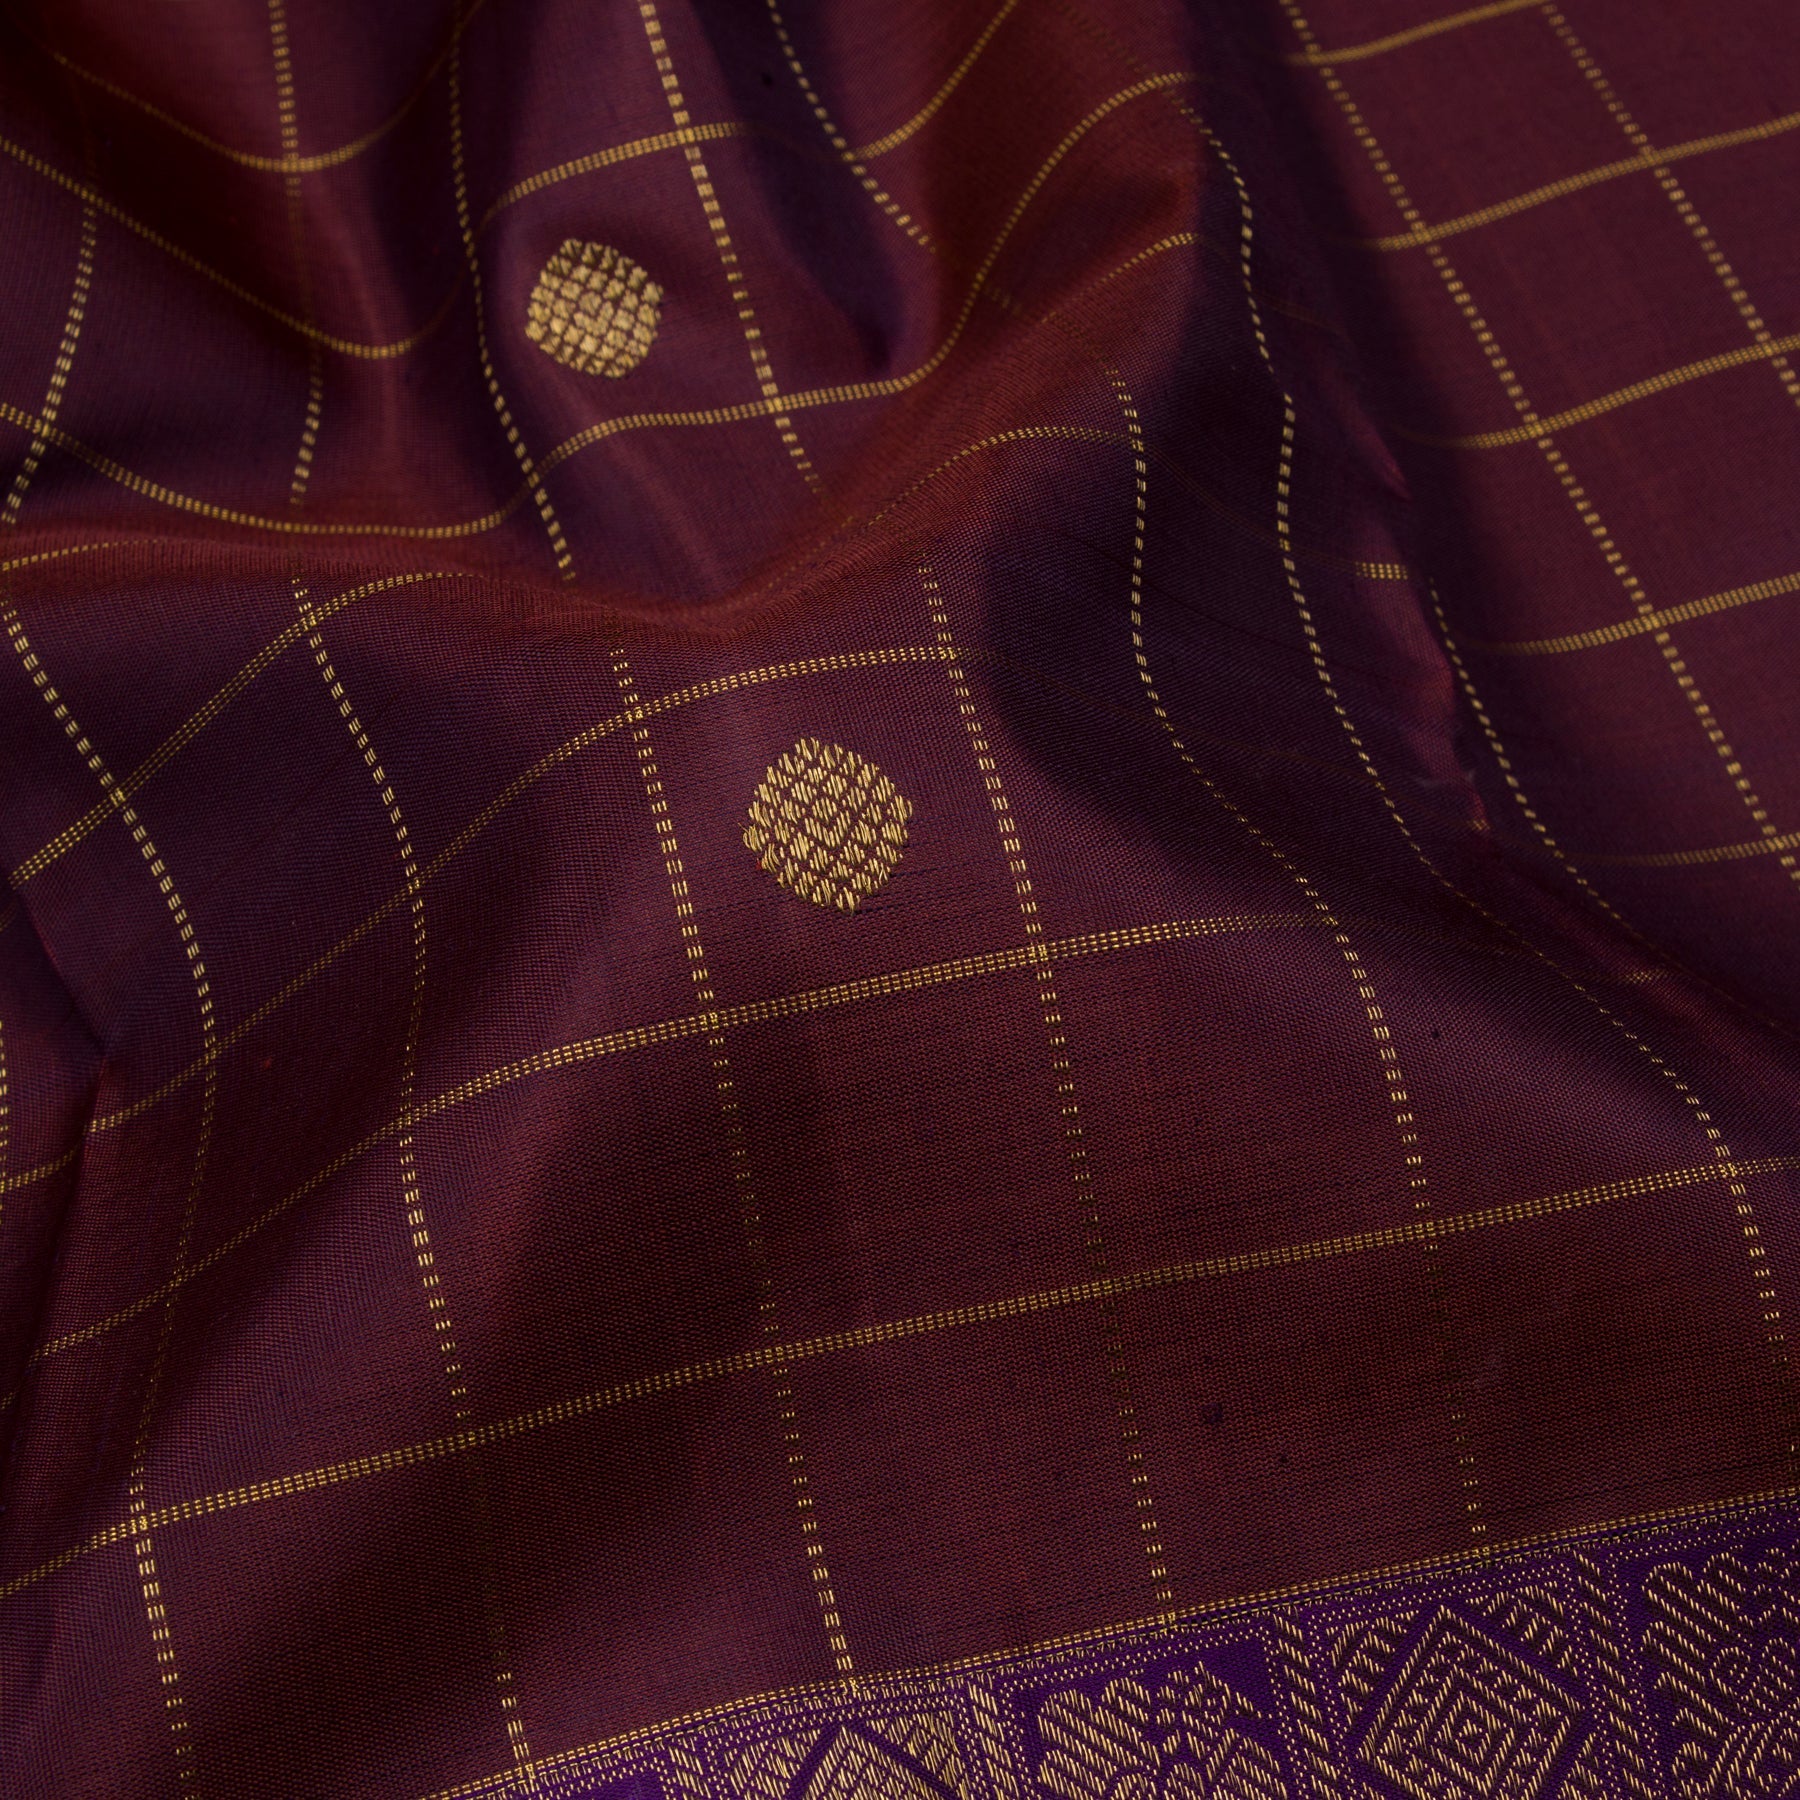 Kanakavalli Kanjivaram Silk Sari 23-595-HS001-09597 - Fabric View